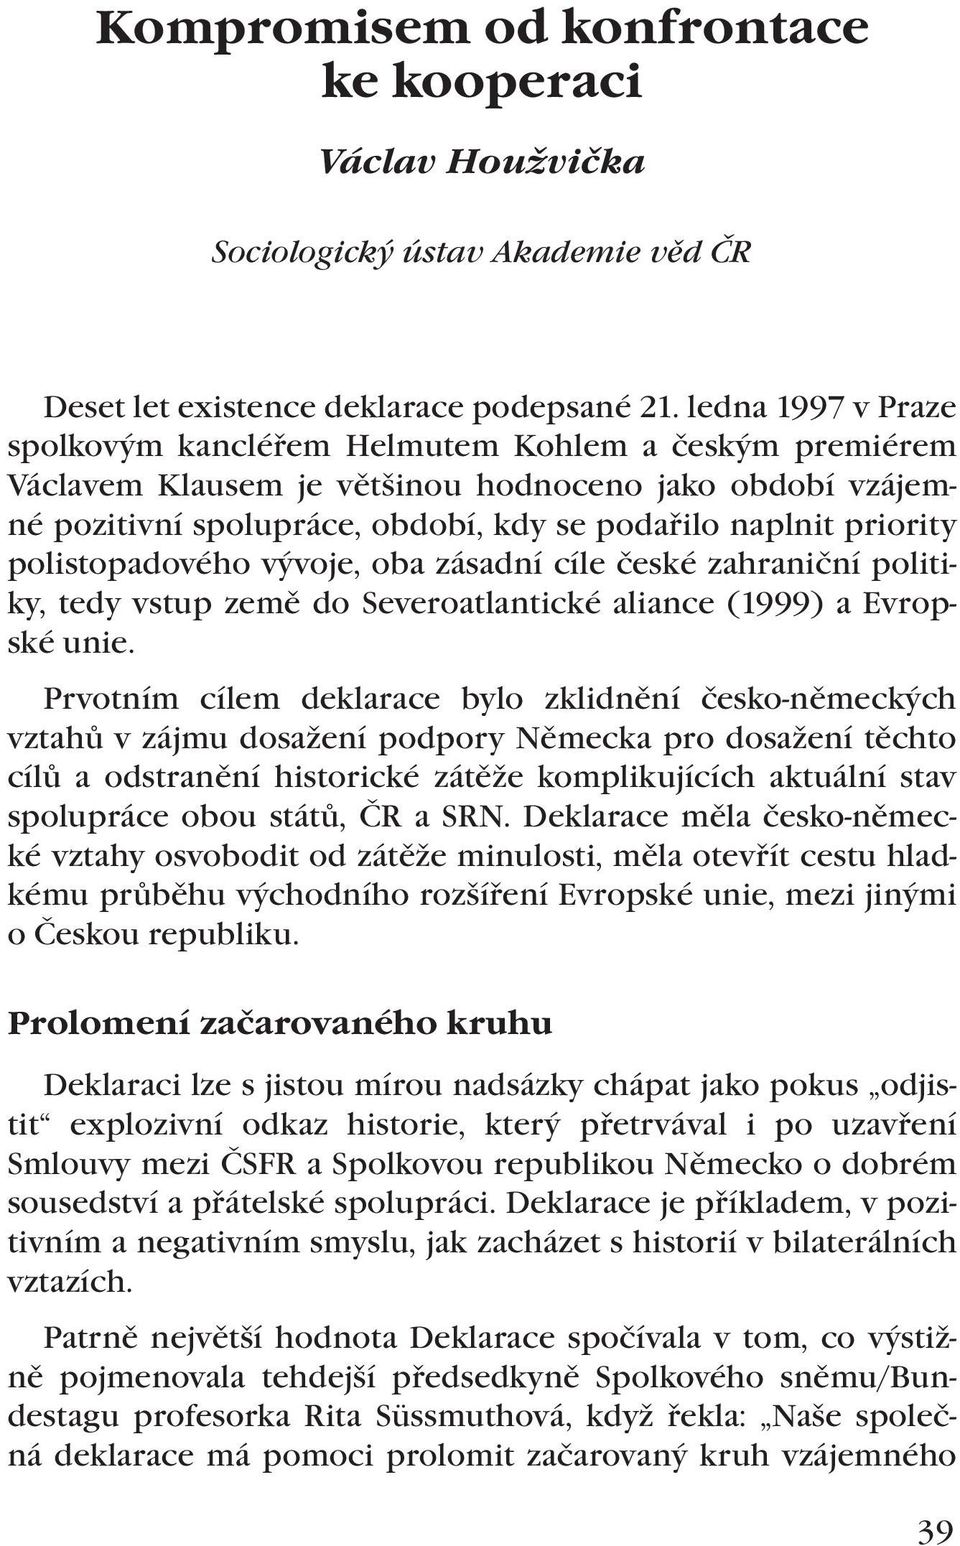 polistopadového vývoje, oba zásadní cíle české zahraniční politiky, tedy vstup země do Severoatlantické aliance (1999) a Evropské unie.